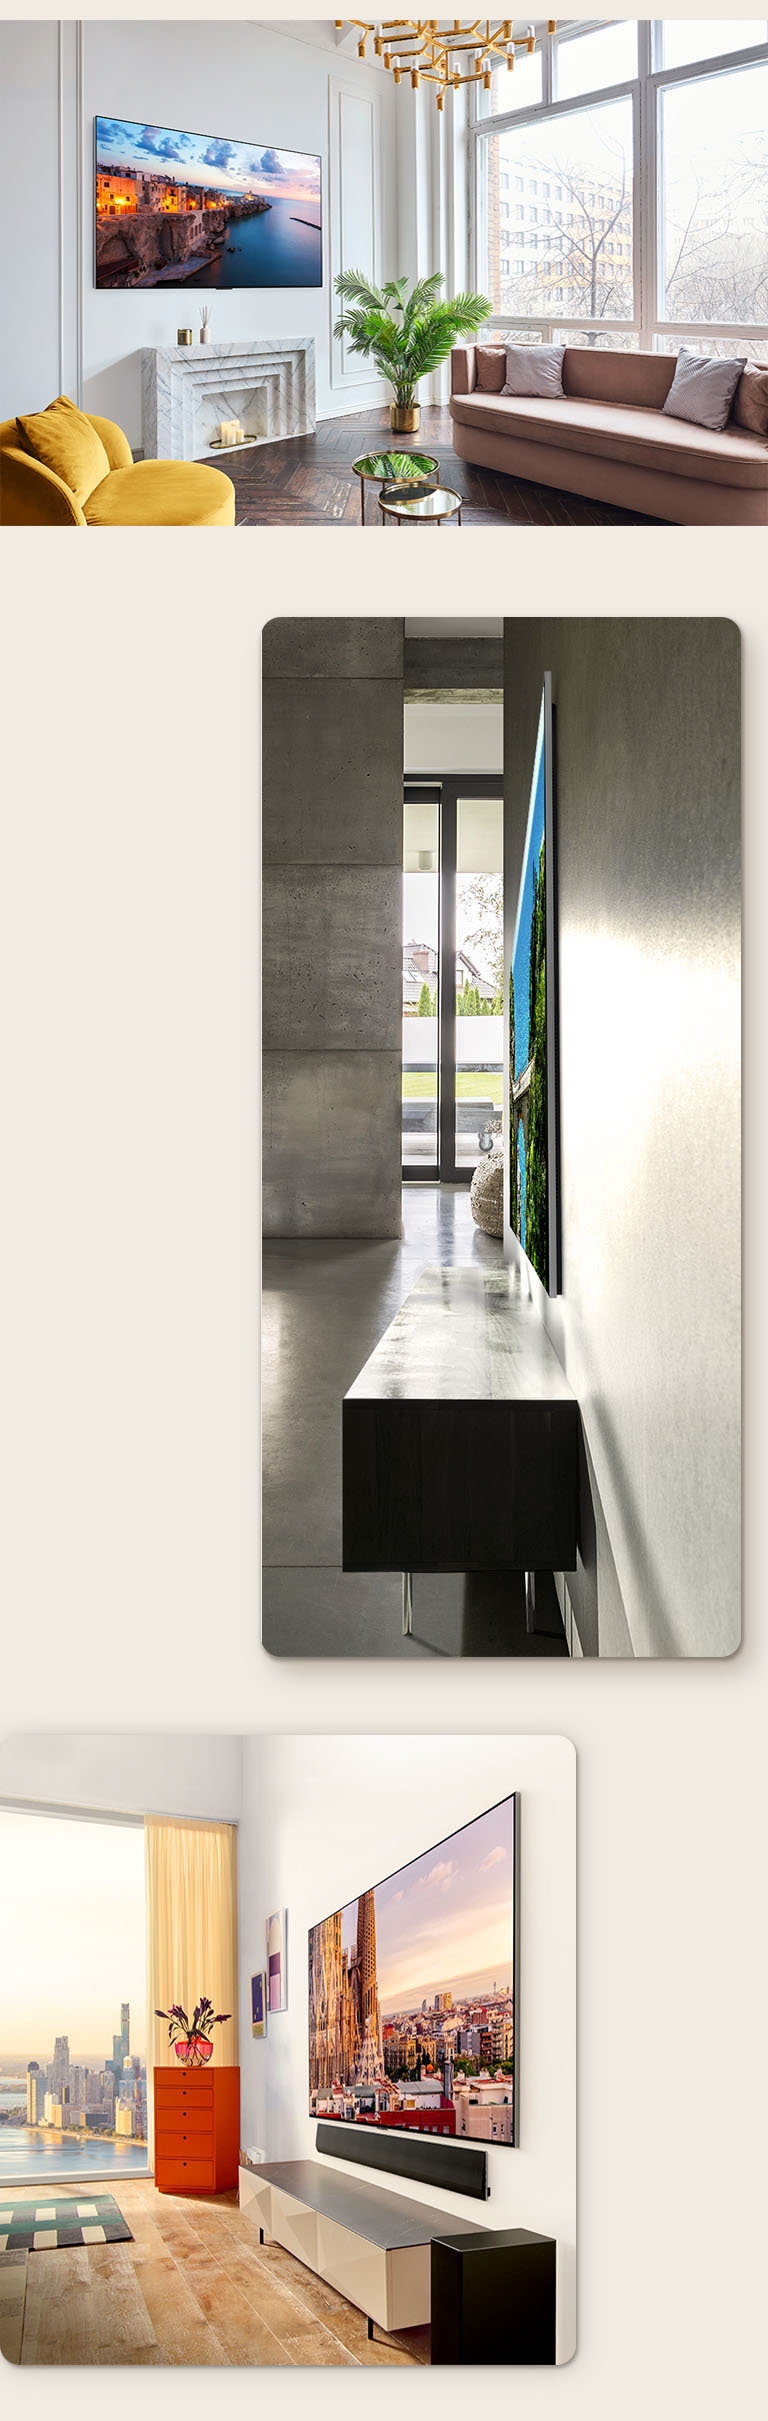 Una imagen del LG OLED G3 en la pared de una habitación decorada mostrando su diseño "Una pared". Una vista lateral de las dimensiones increíblemente delgadas del LG OLED G3. Una vista angular de LG OLED G3 en la pared de un apartamento con vista a la ciudad con una barra de sonido debajo.